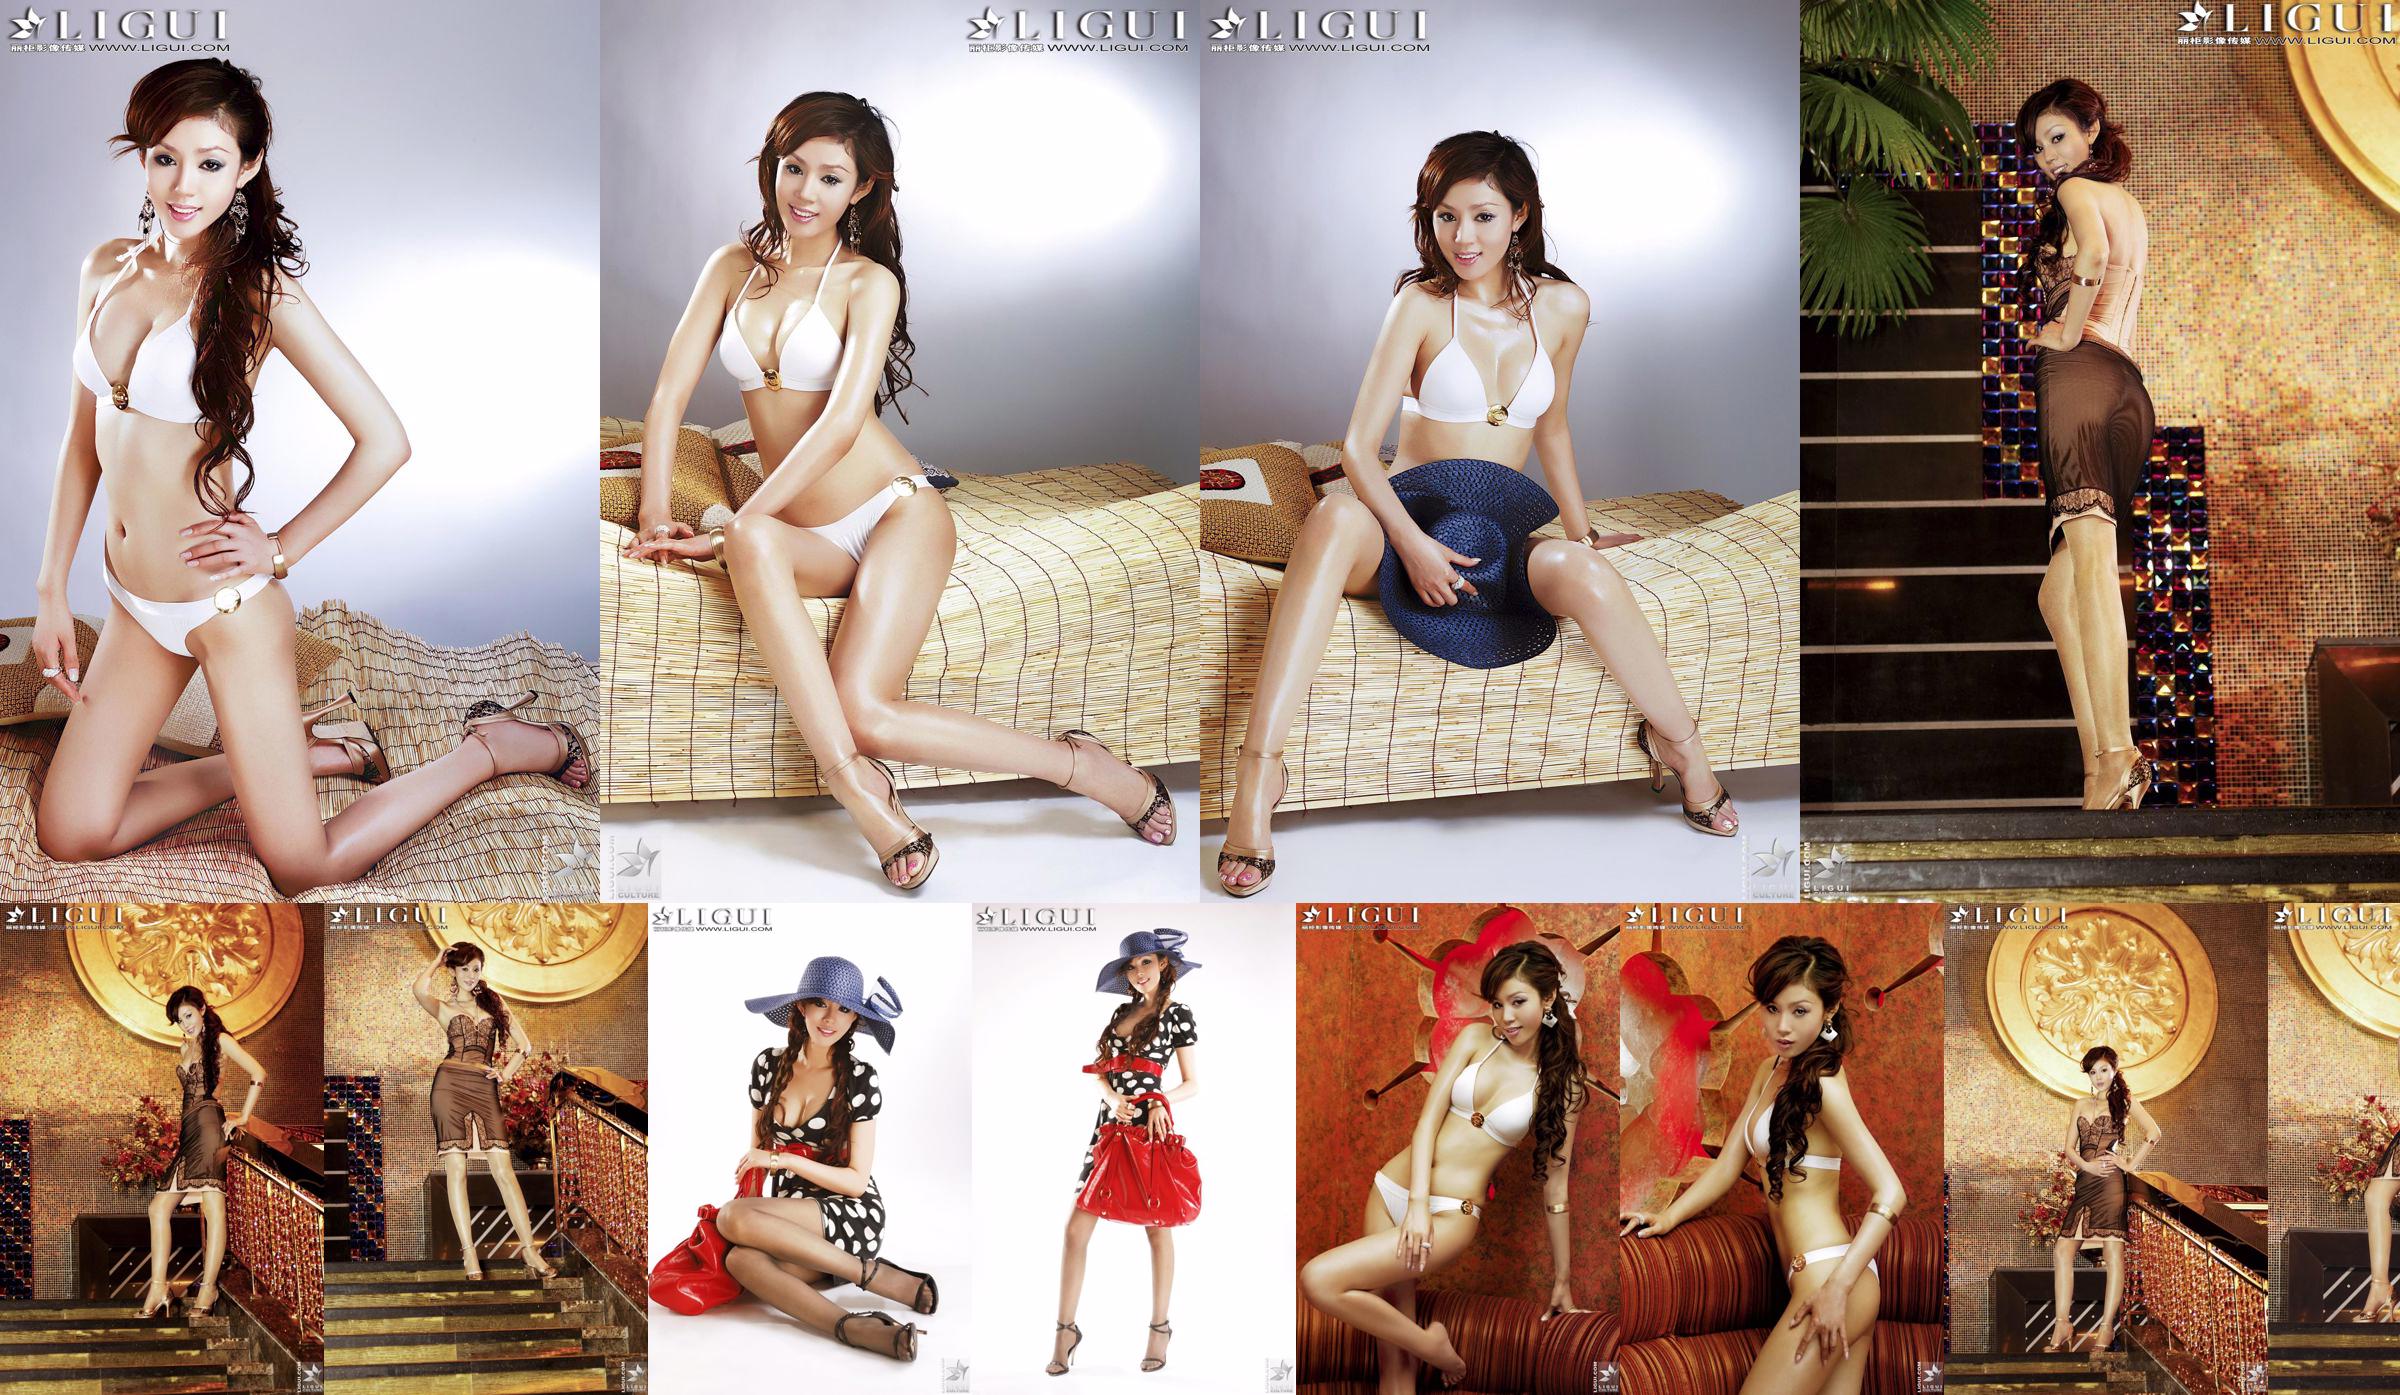 [丽 柜 LiGui] "Bikini + Robe" du modèle Yao Jinjin, belles jambes et pieds soyeux Photo Picture No.48b396 Page 8